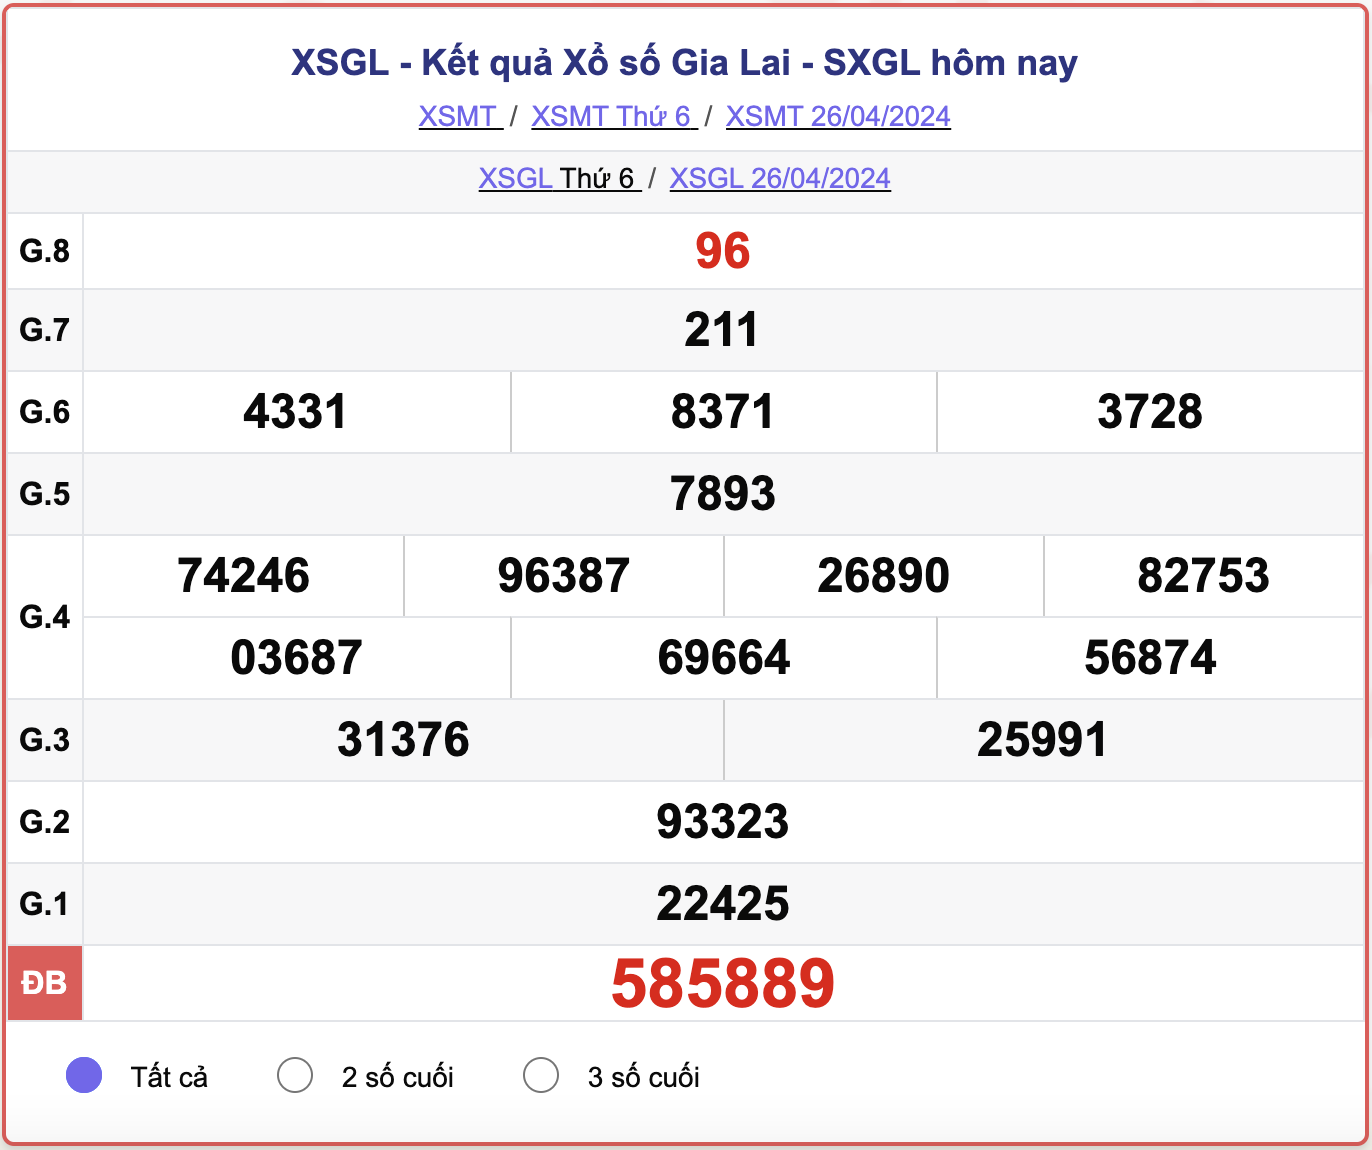 XSGL thứ Sáu, kết quả xổ số Gia Lai ngày 26/4/2024.